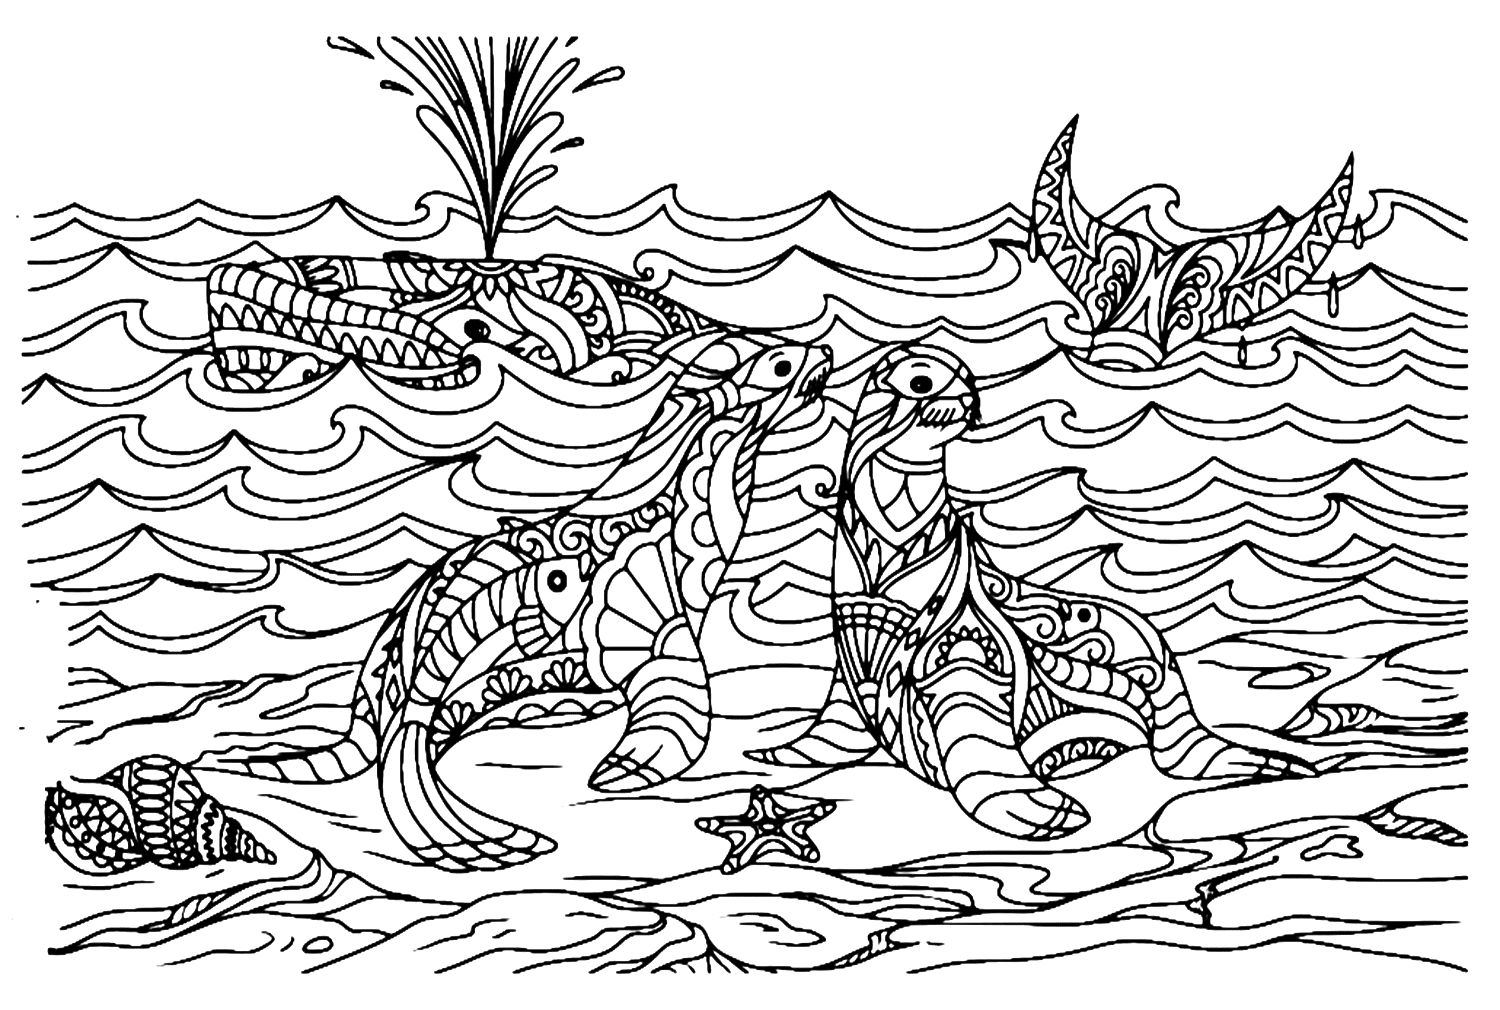 海狮的曼陀罗海狮和鲸鱼